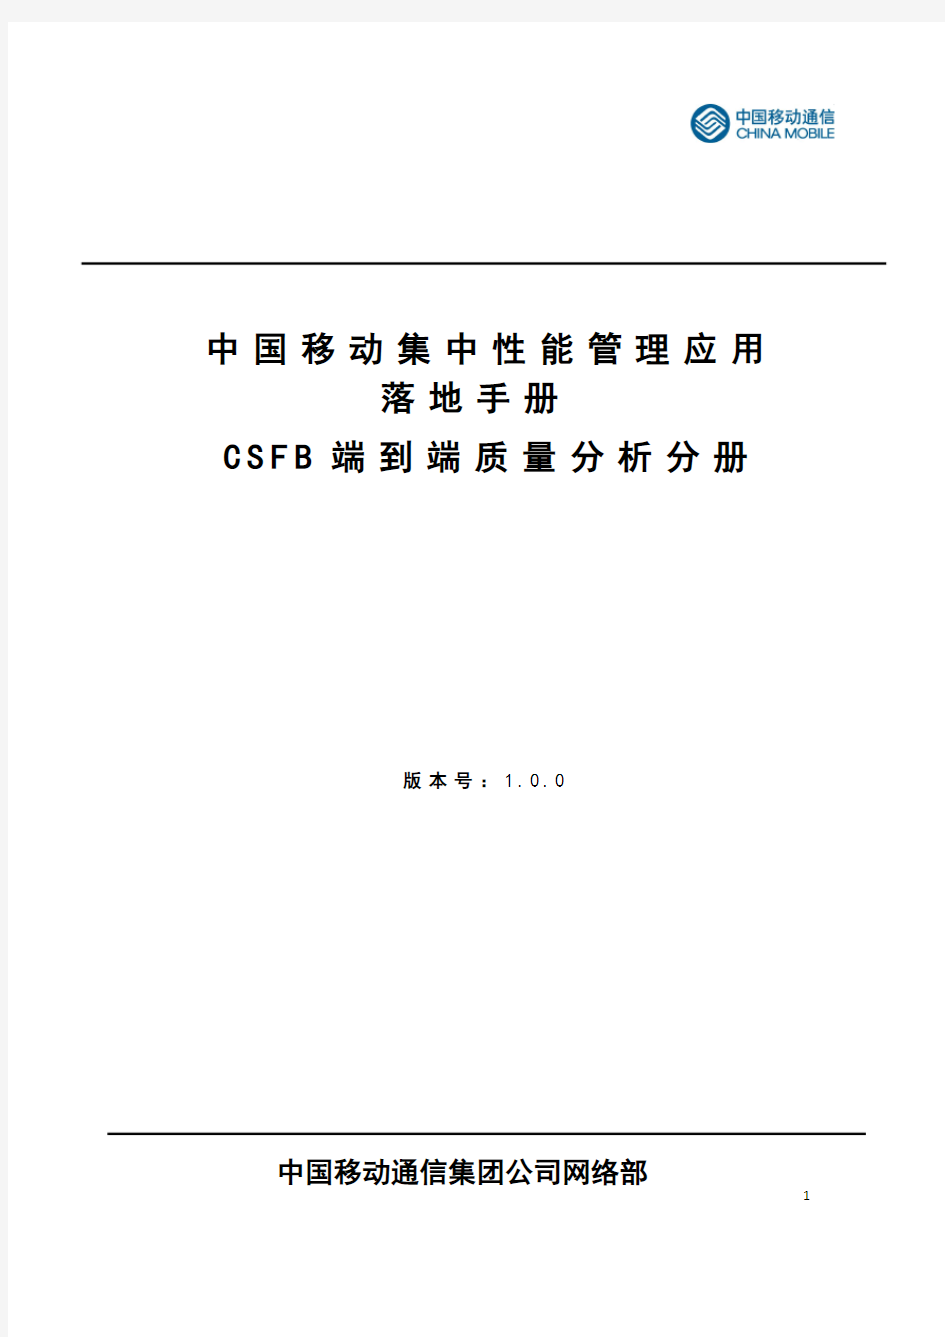 中国移动集中性能管理应用落地手册第三分册CSFB端到端业务质量分析